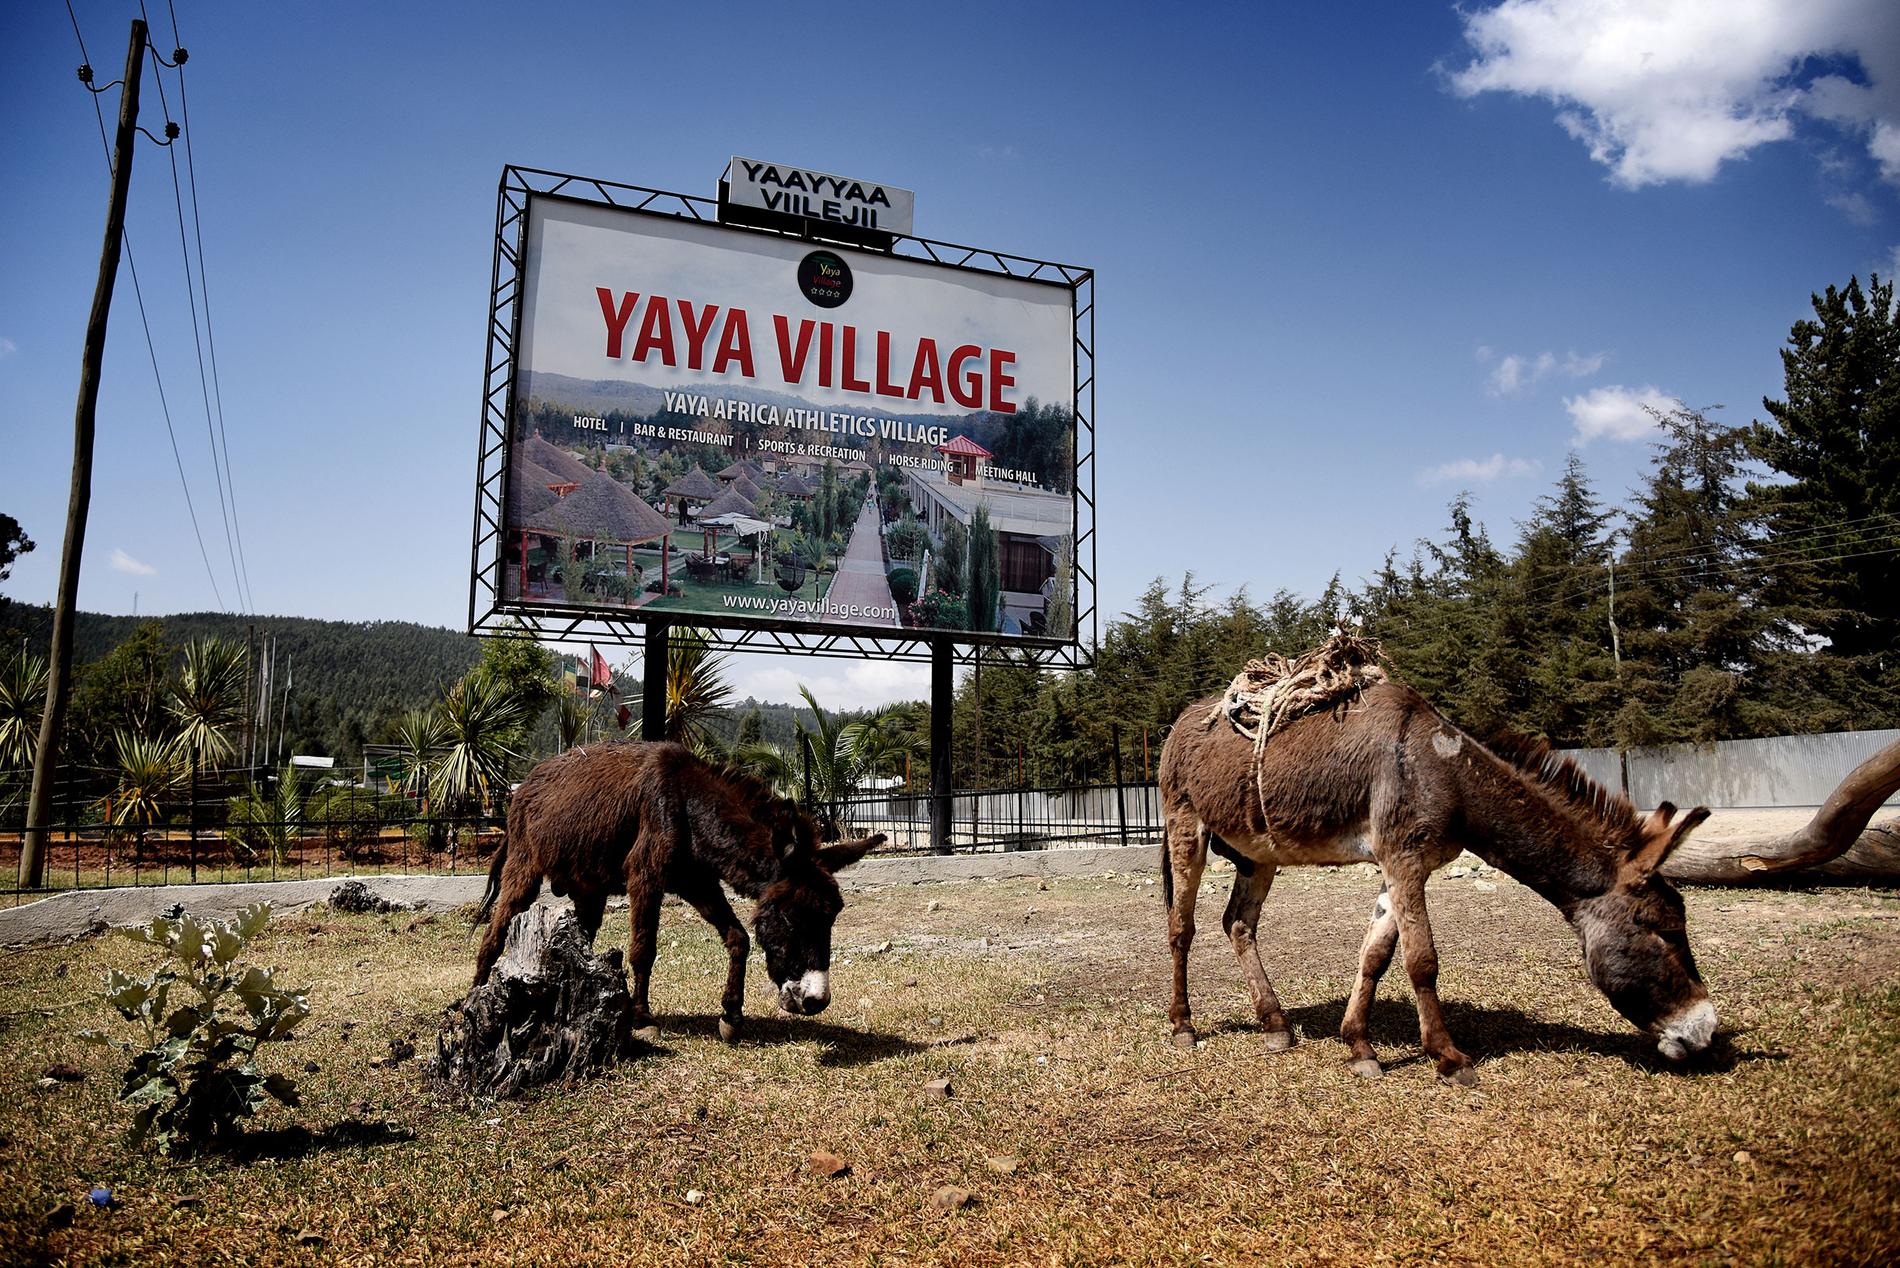 Yaya Village är en resort där många av de aktiva bor när de är på höghöjdsträning i Sululta. Här finns Yaya Africa Athletics Village, där de flesta elitlöpare bor. En av dem som tränar här är Abeba Aregawi.